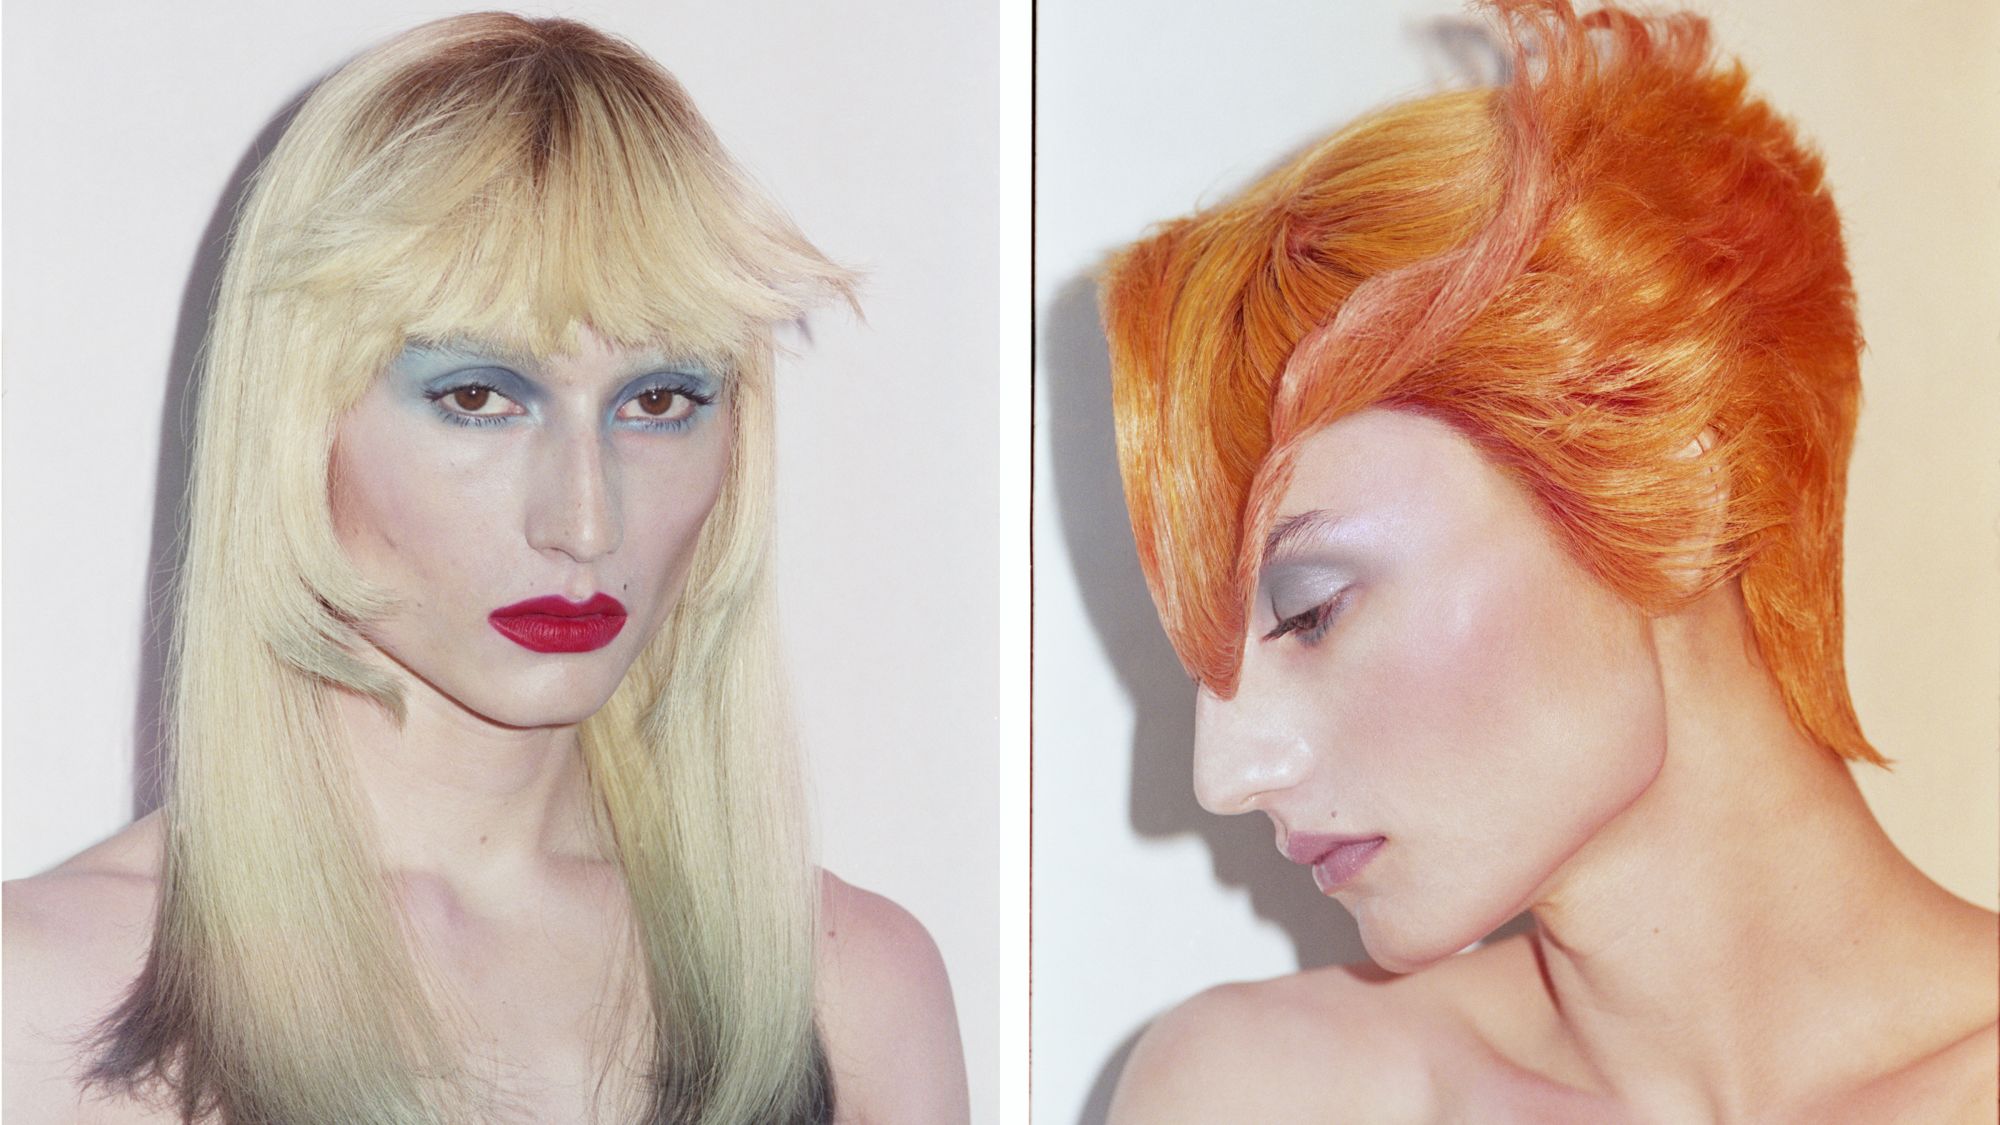 Hair artist Tomihiro Kono uses 111 wigs to explore identity | CNN